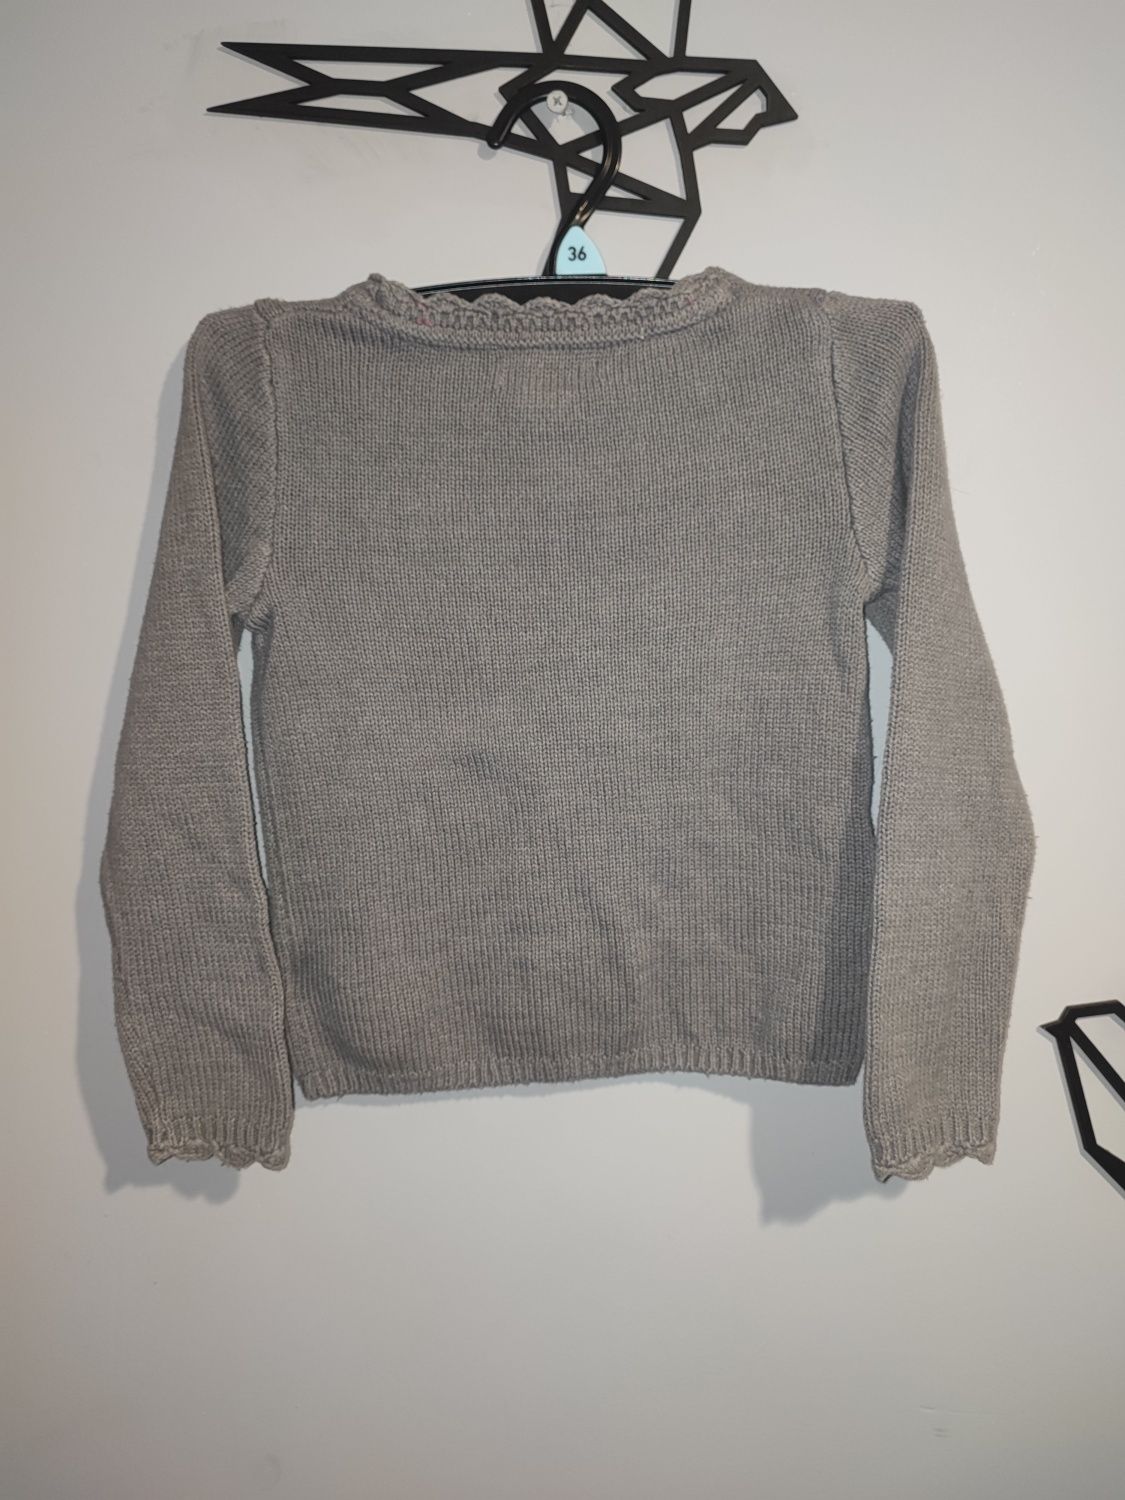 Sweterkowy komplecik koszulka i spódniczka Bopster&mimi 98